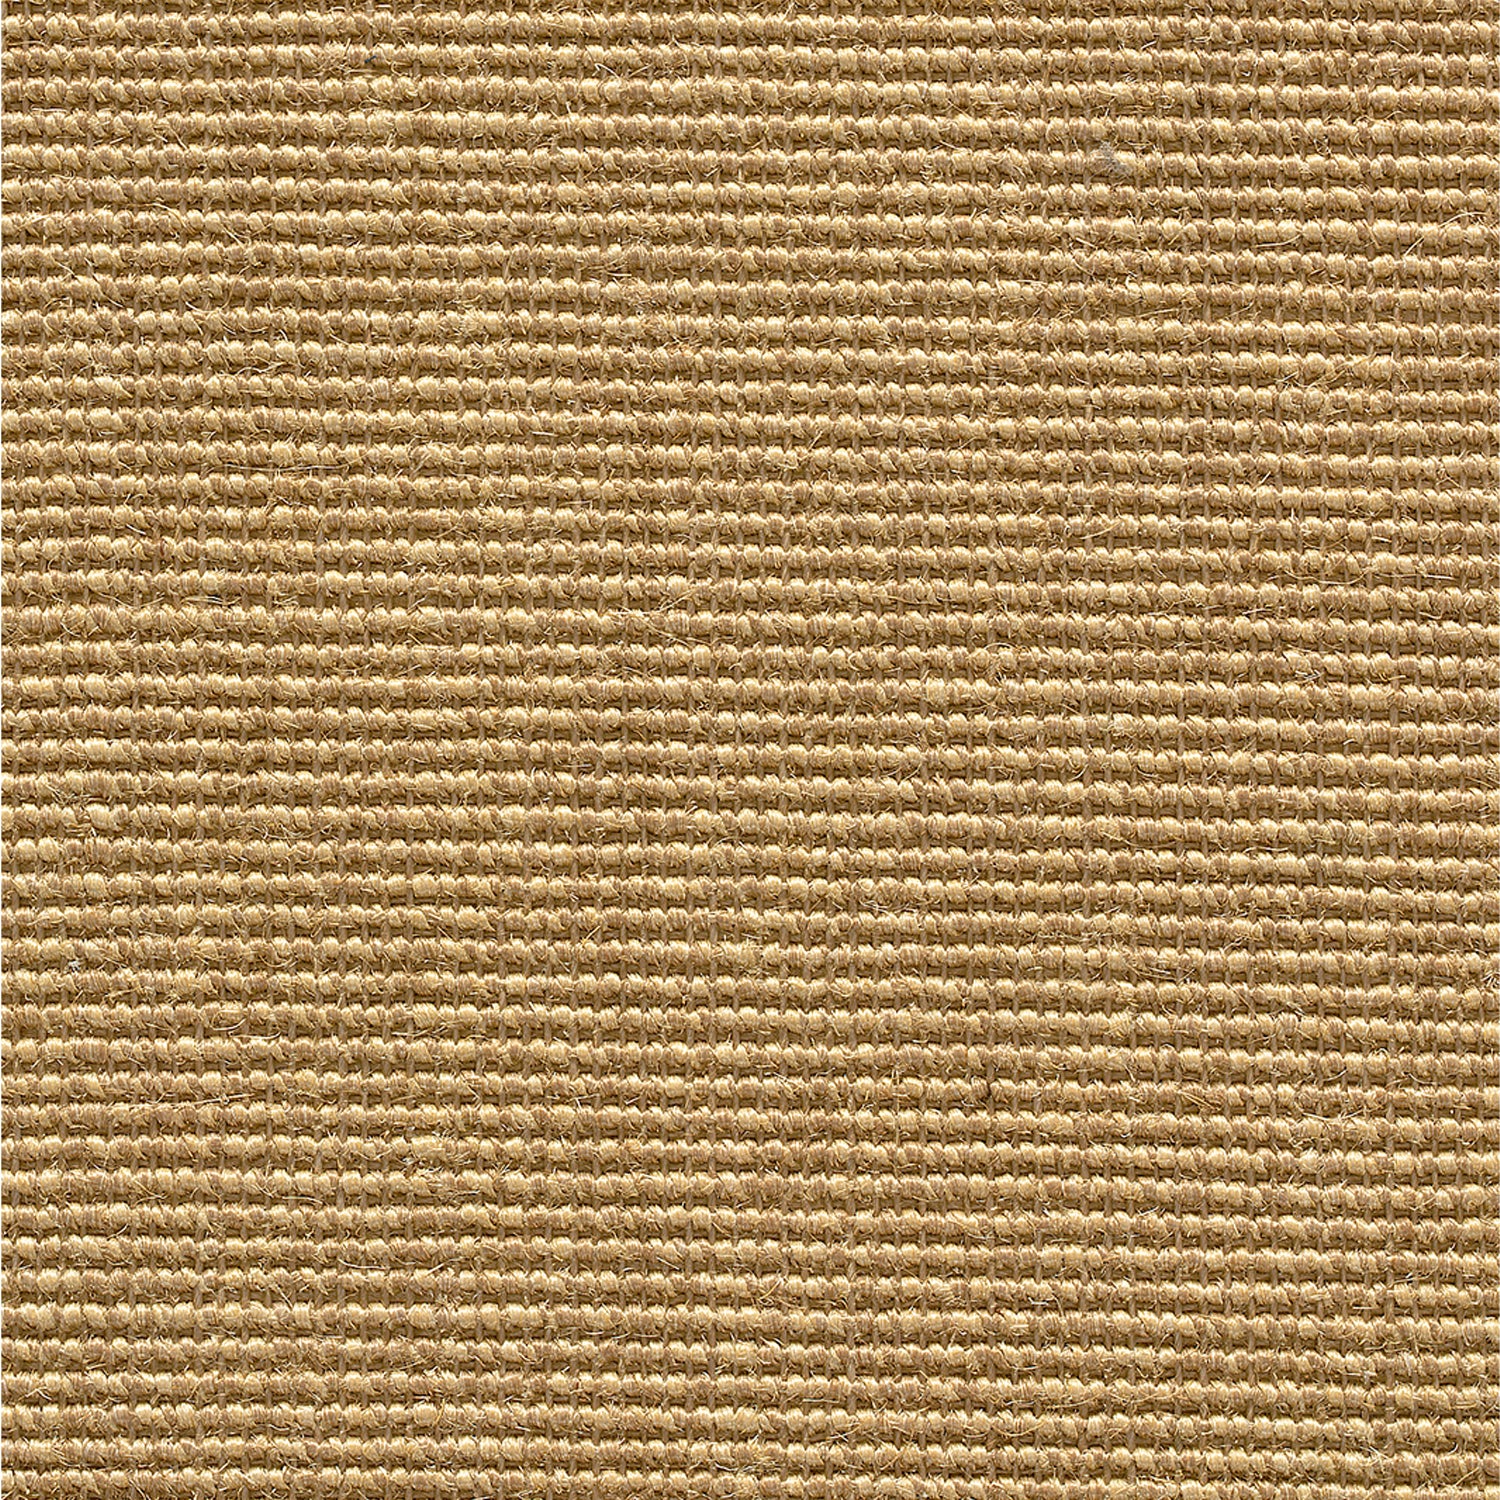 Sisal broadloom carpet swatch in a flat grid weave in gold.